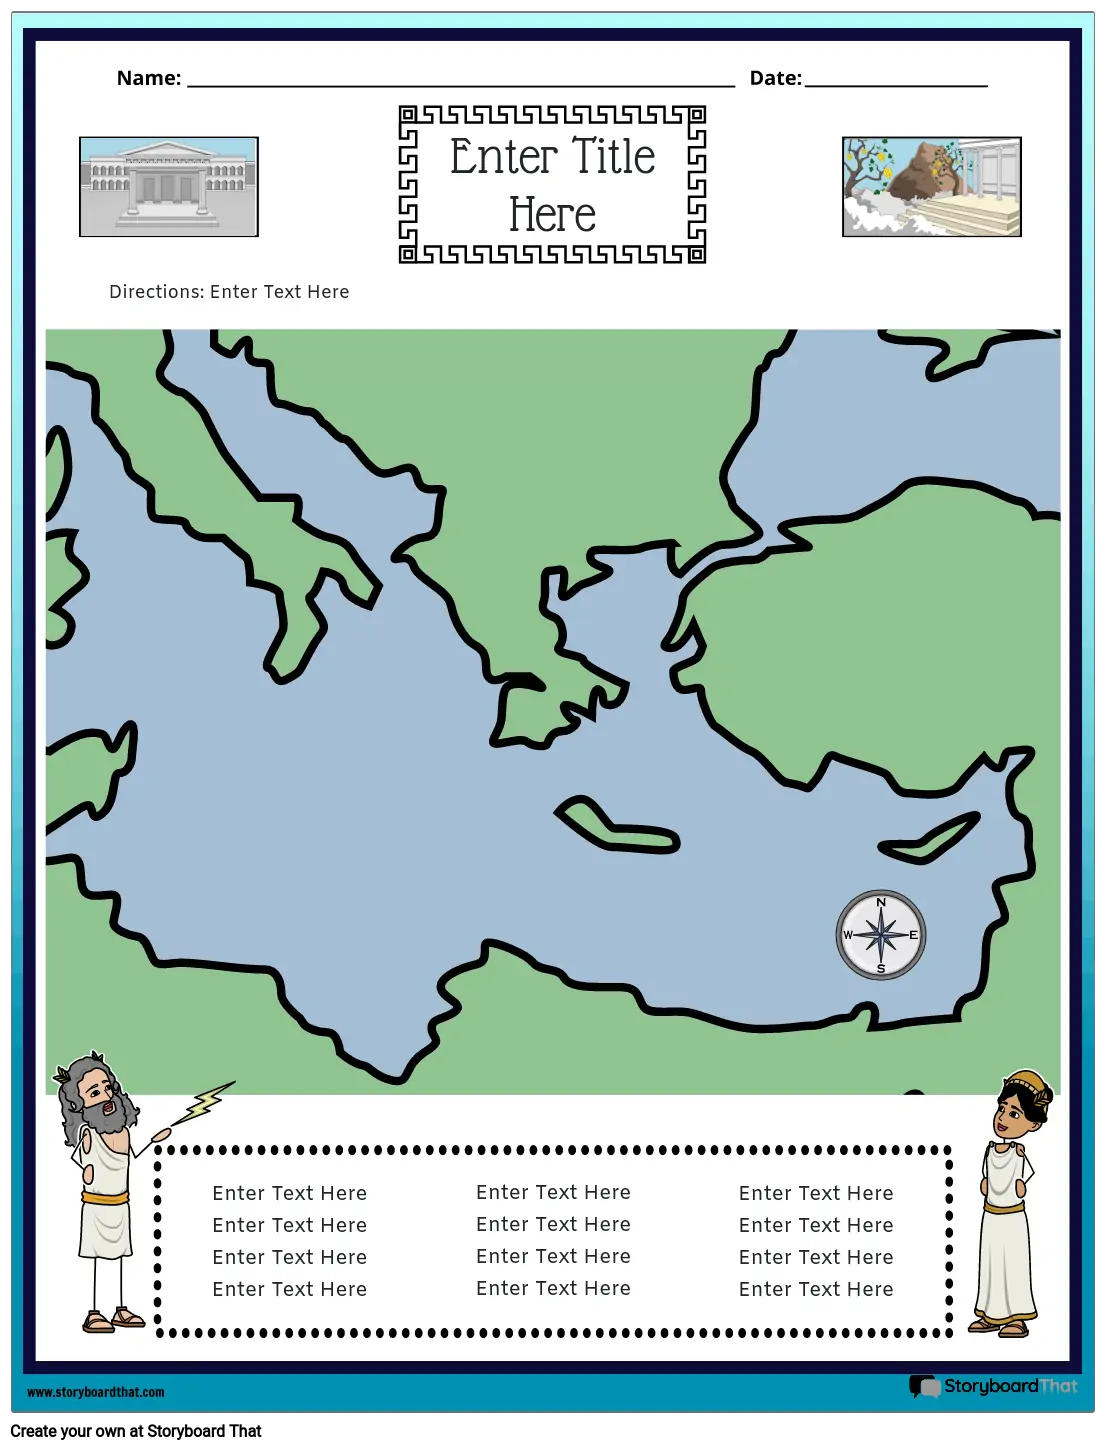 خريطة اليونان القديمة